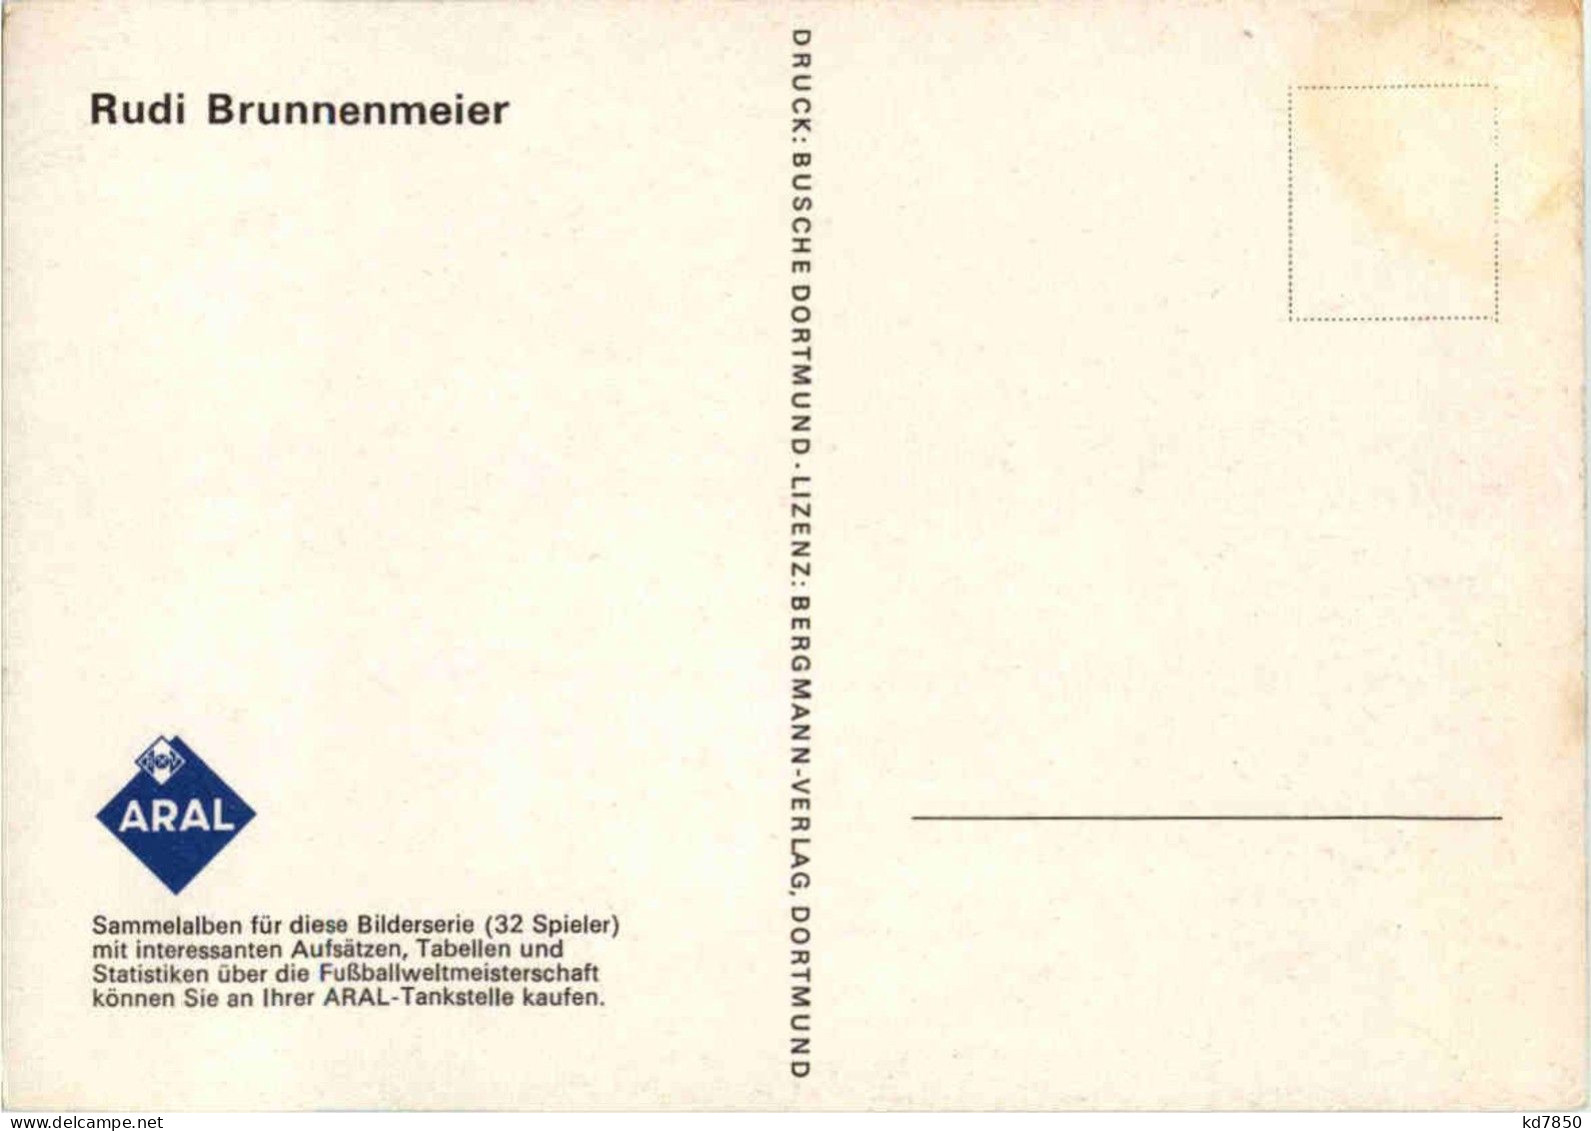 Rudi Brunnenmeier - Soccer